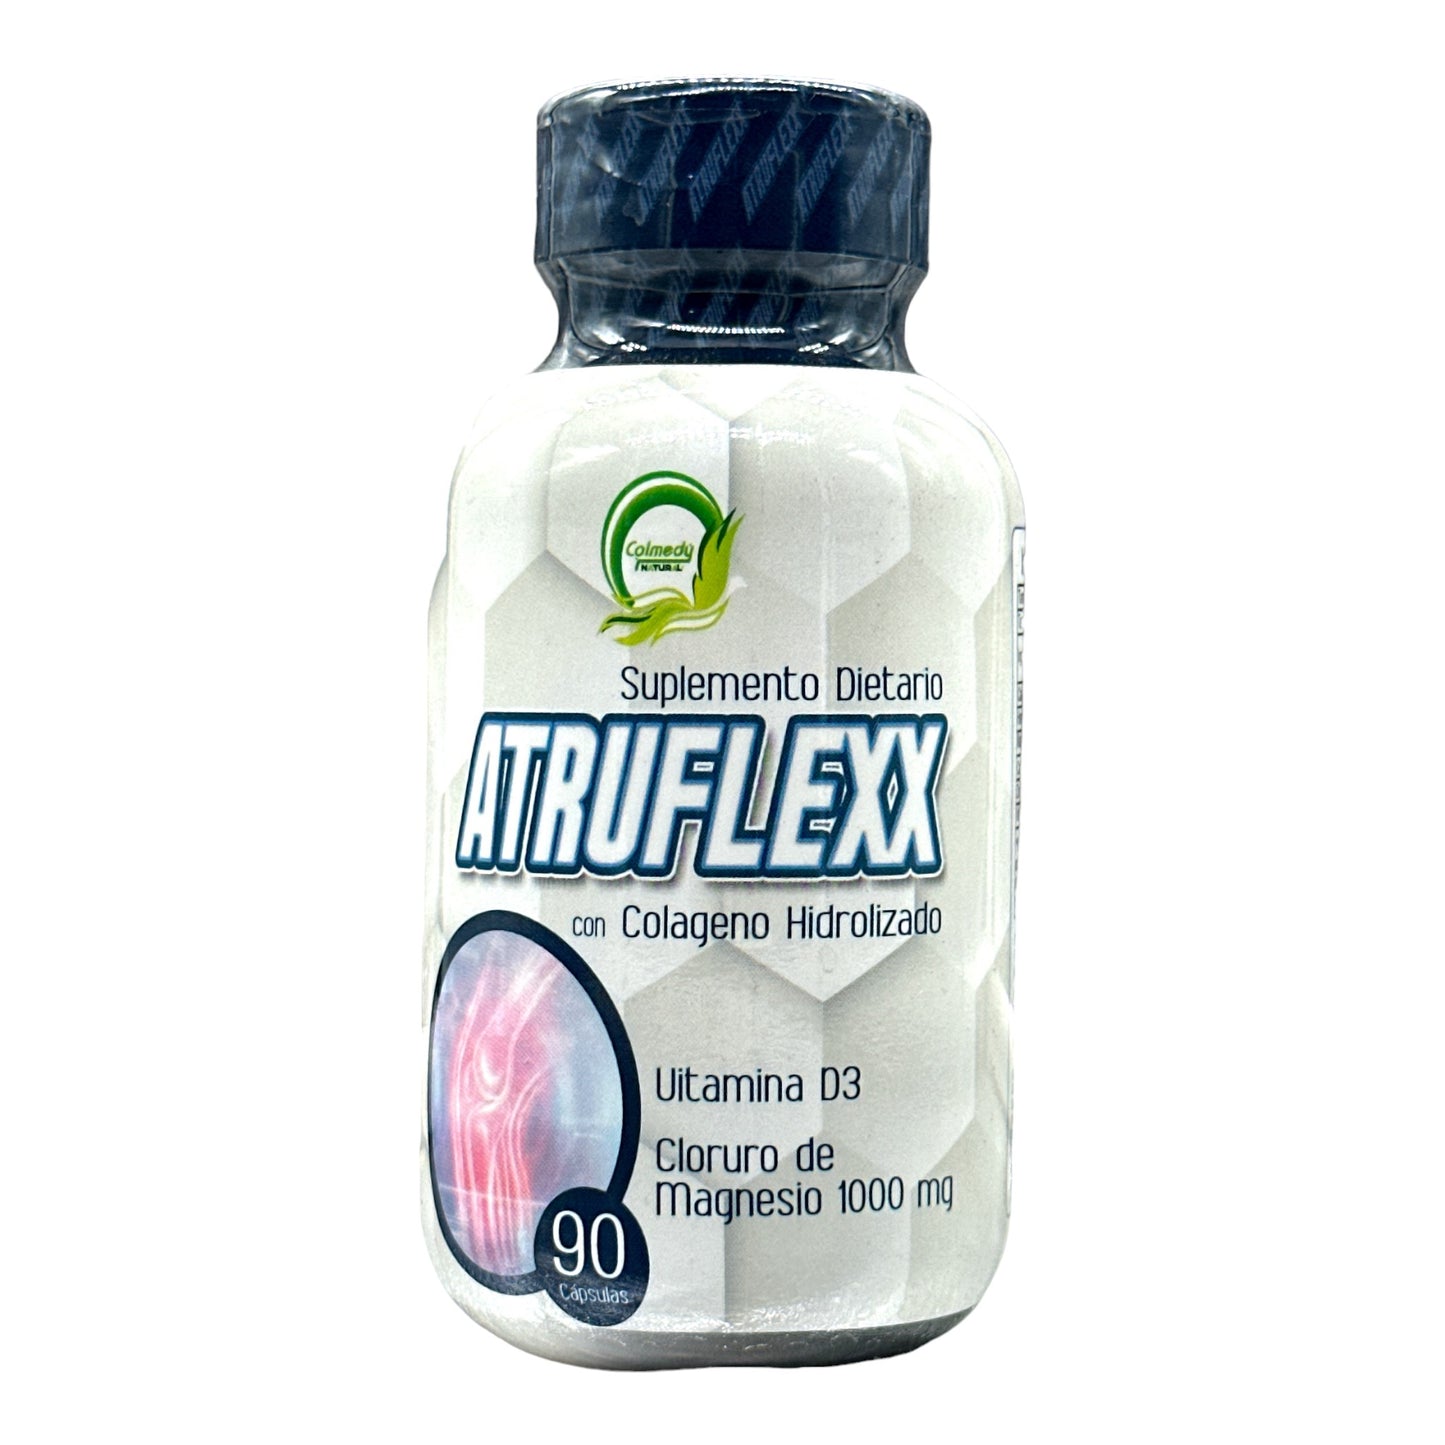 Atruflexx 90 capsulas | Colmedy